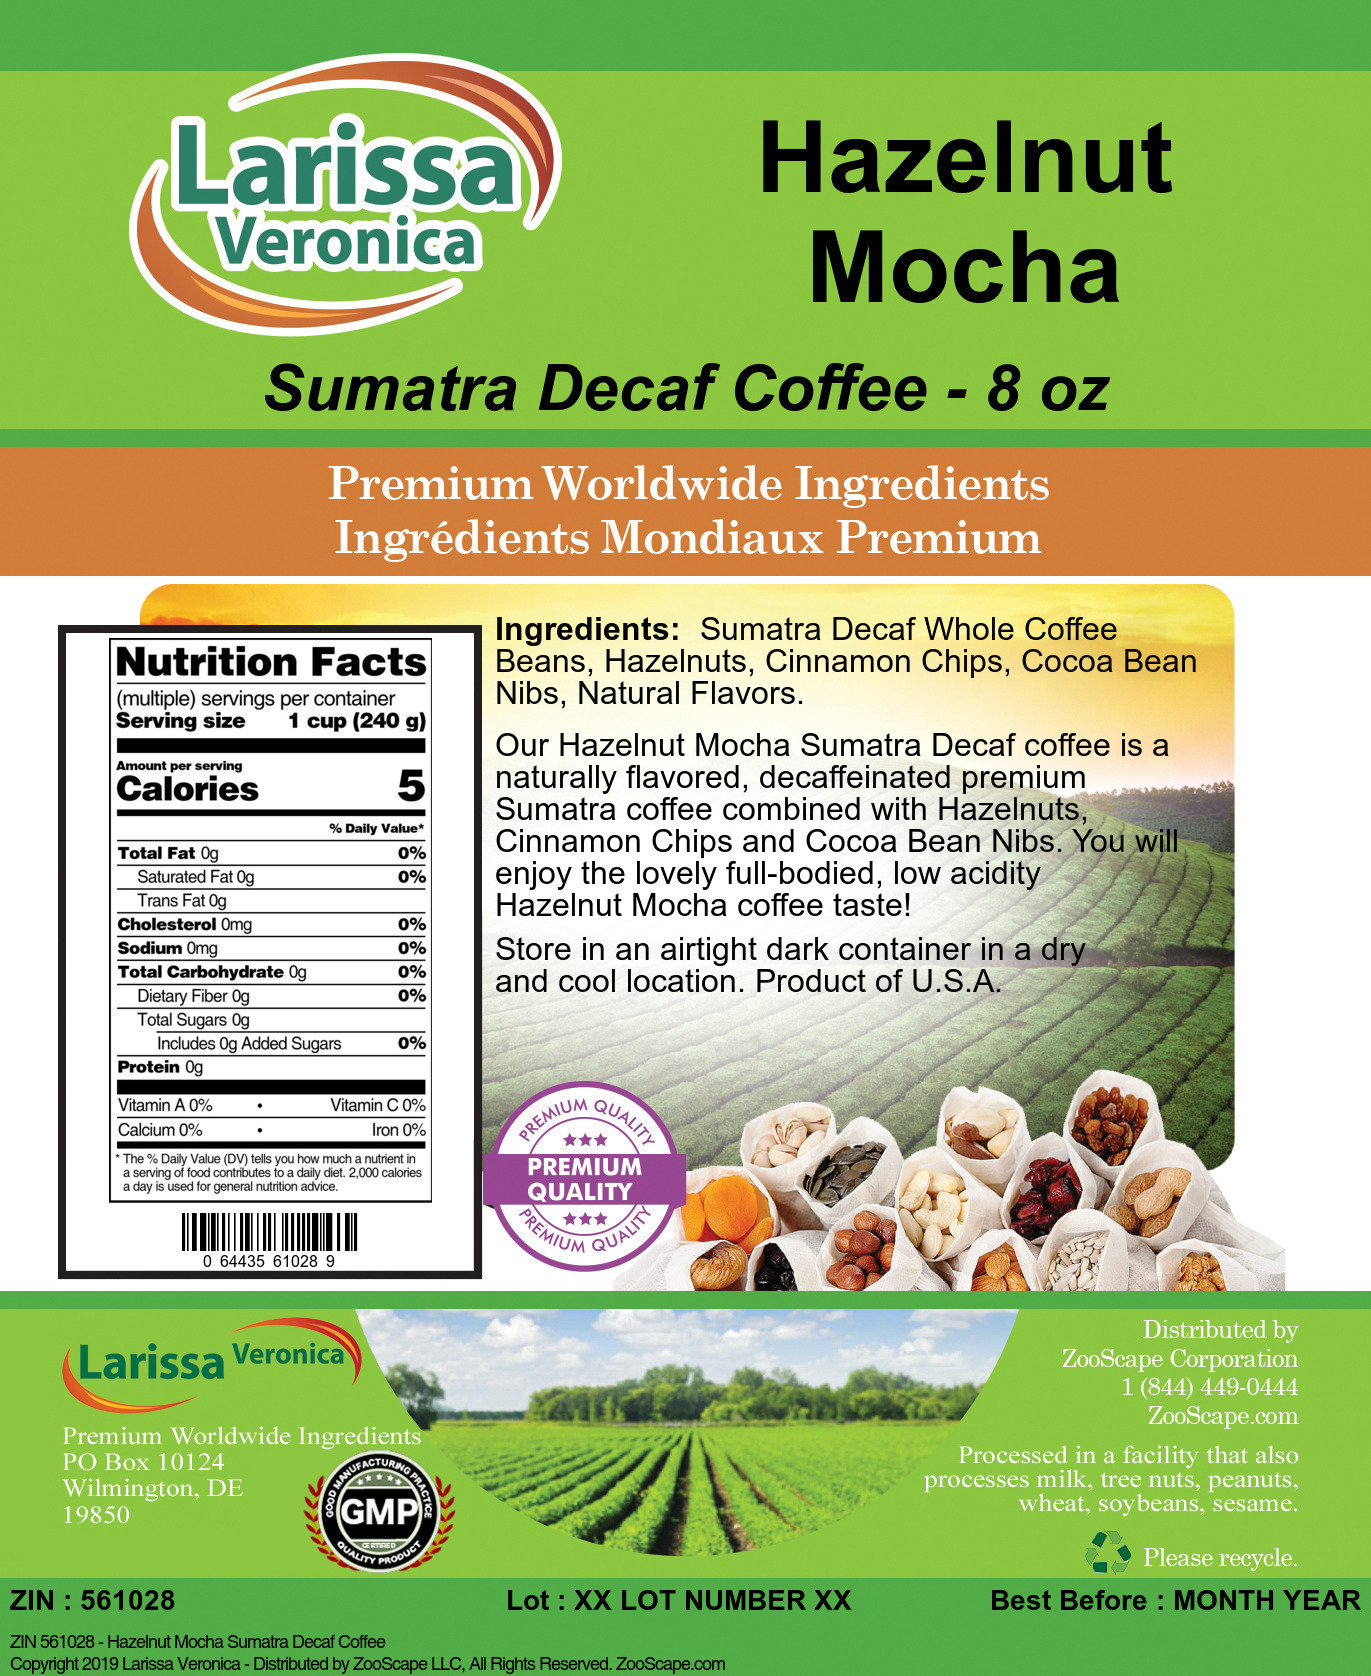 Hazelnut Mocha Sumatra Decaf Coffee - Label